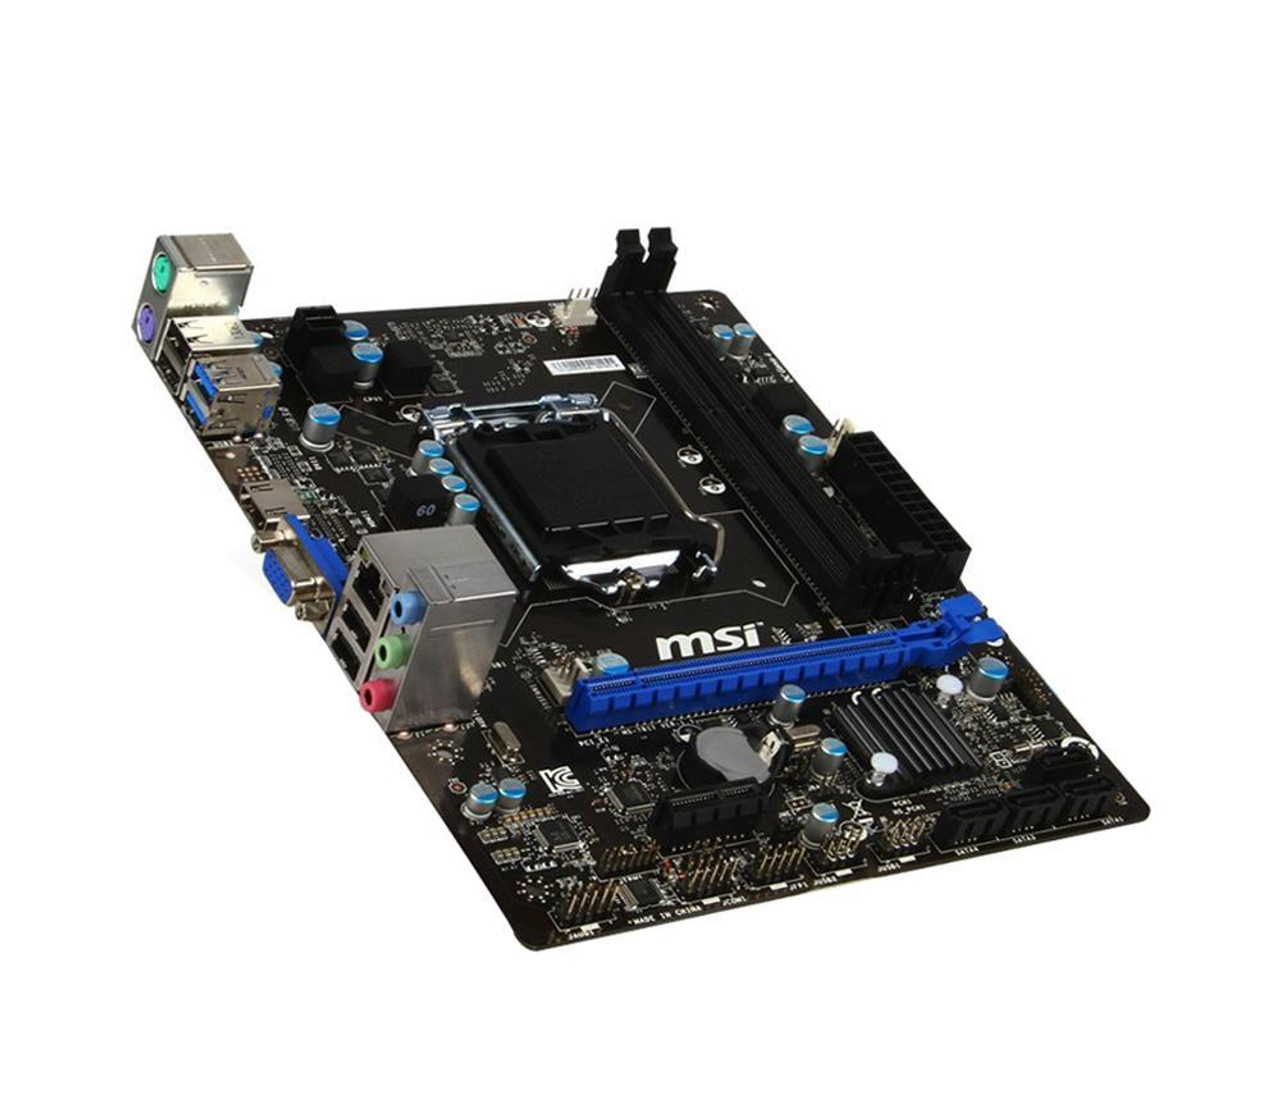 MSI B85M-E33 Socket LGA 1150 Intel B85 Express Chipset Core i7 / i5 / i3 Pentium / Celeron Processors Support DDR3 2x DIMM 2x SATA 3.0Gb/s Micro-ATX Motherboard  Mfr P/N MS-7817